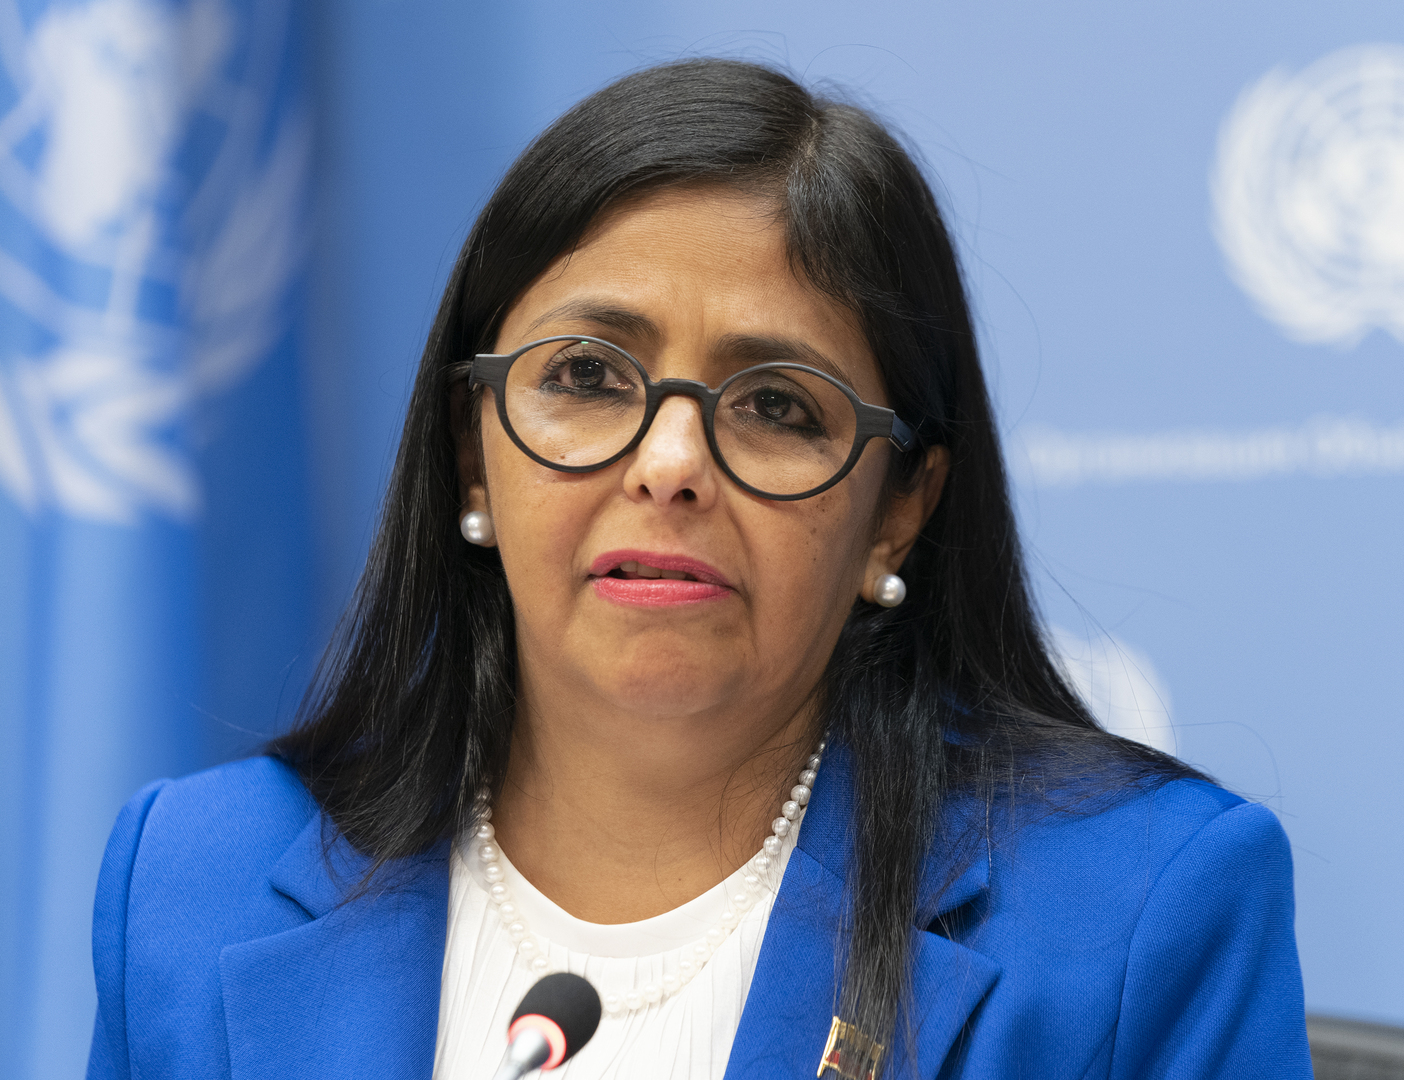 نائبة رئيس فنزويلا تدعو لدعم فلسطين